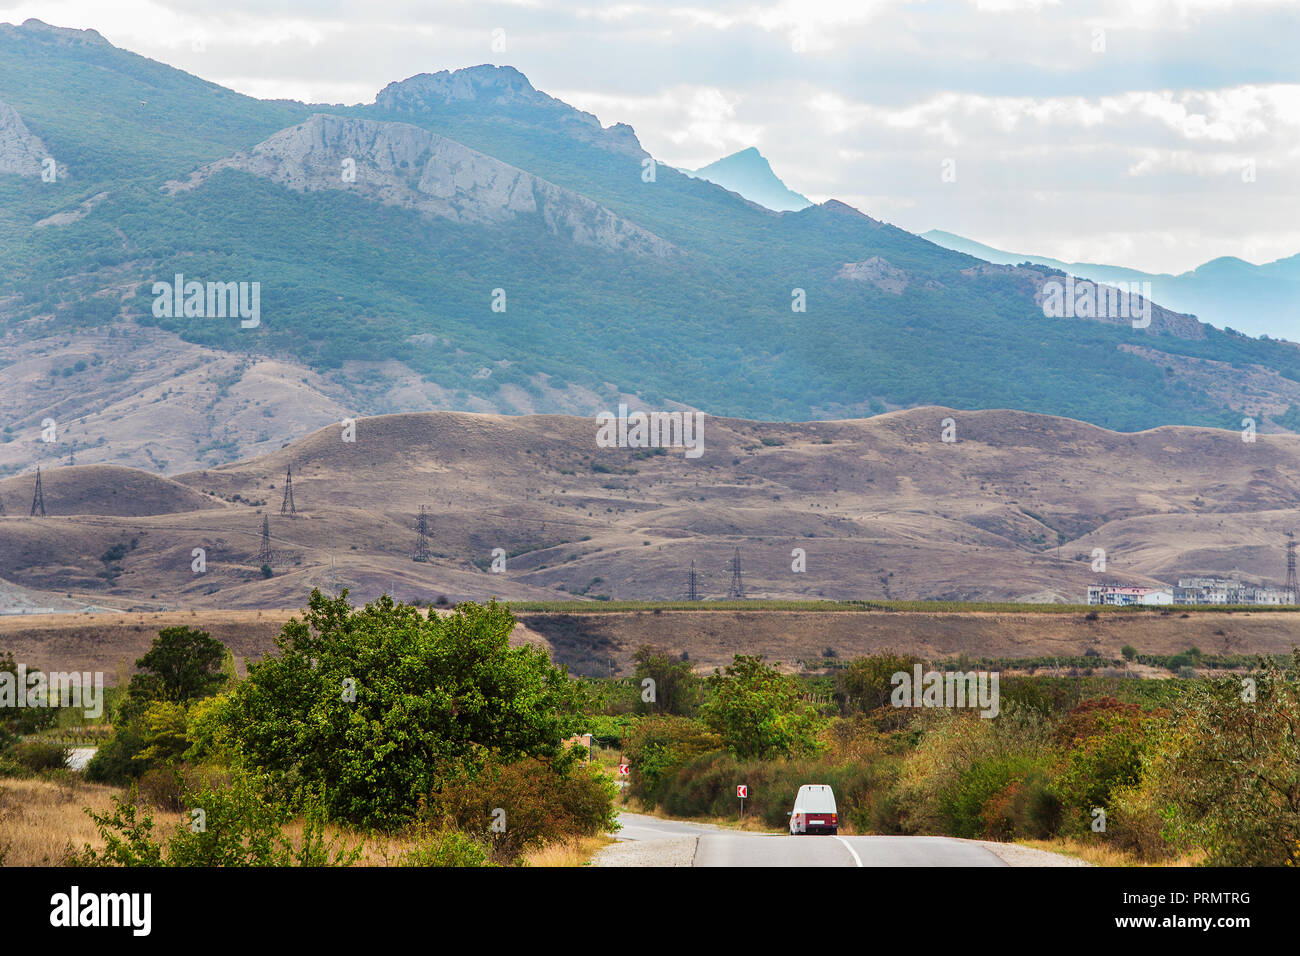 Auto bewegt sich entlang der Autobahn in einer schönen bergigen Umgebung Stockfoto